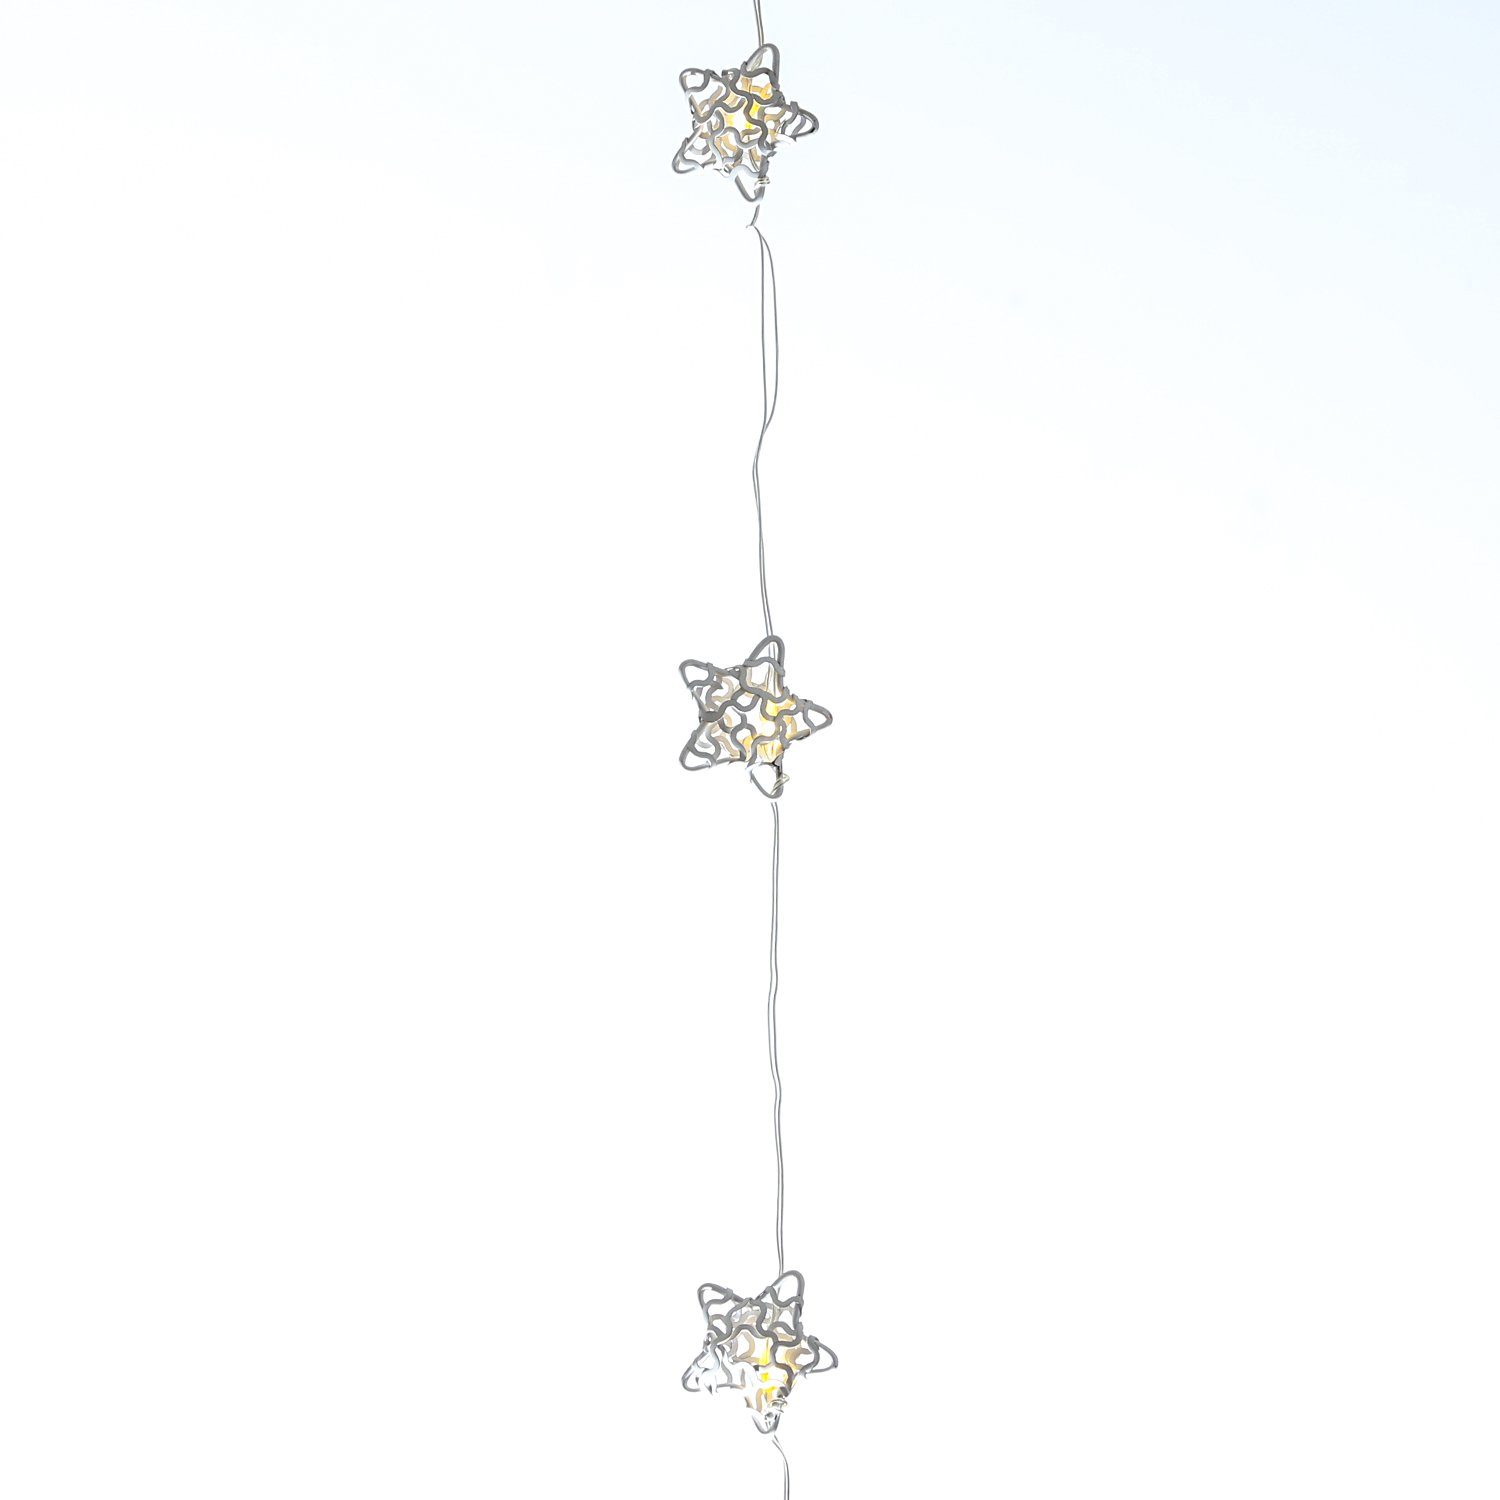 LED-Lichterkette 20 20-flammig Draht Sterne weiß, Weihnachtsdeko LED MARELIDA Dekolichterkette